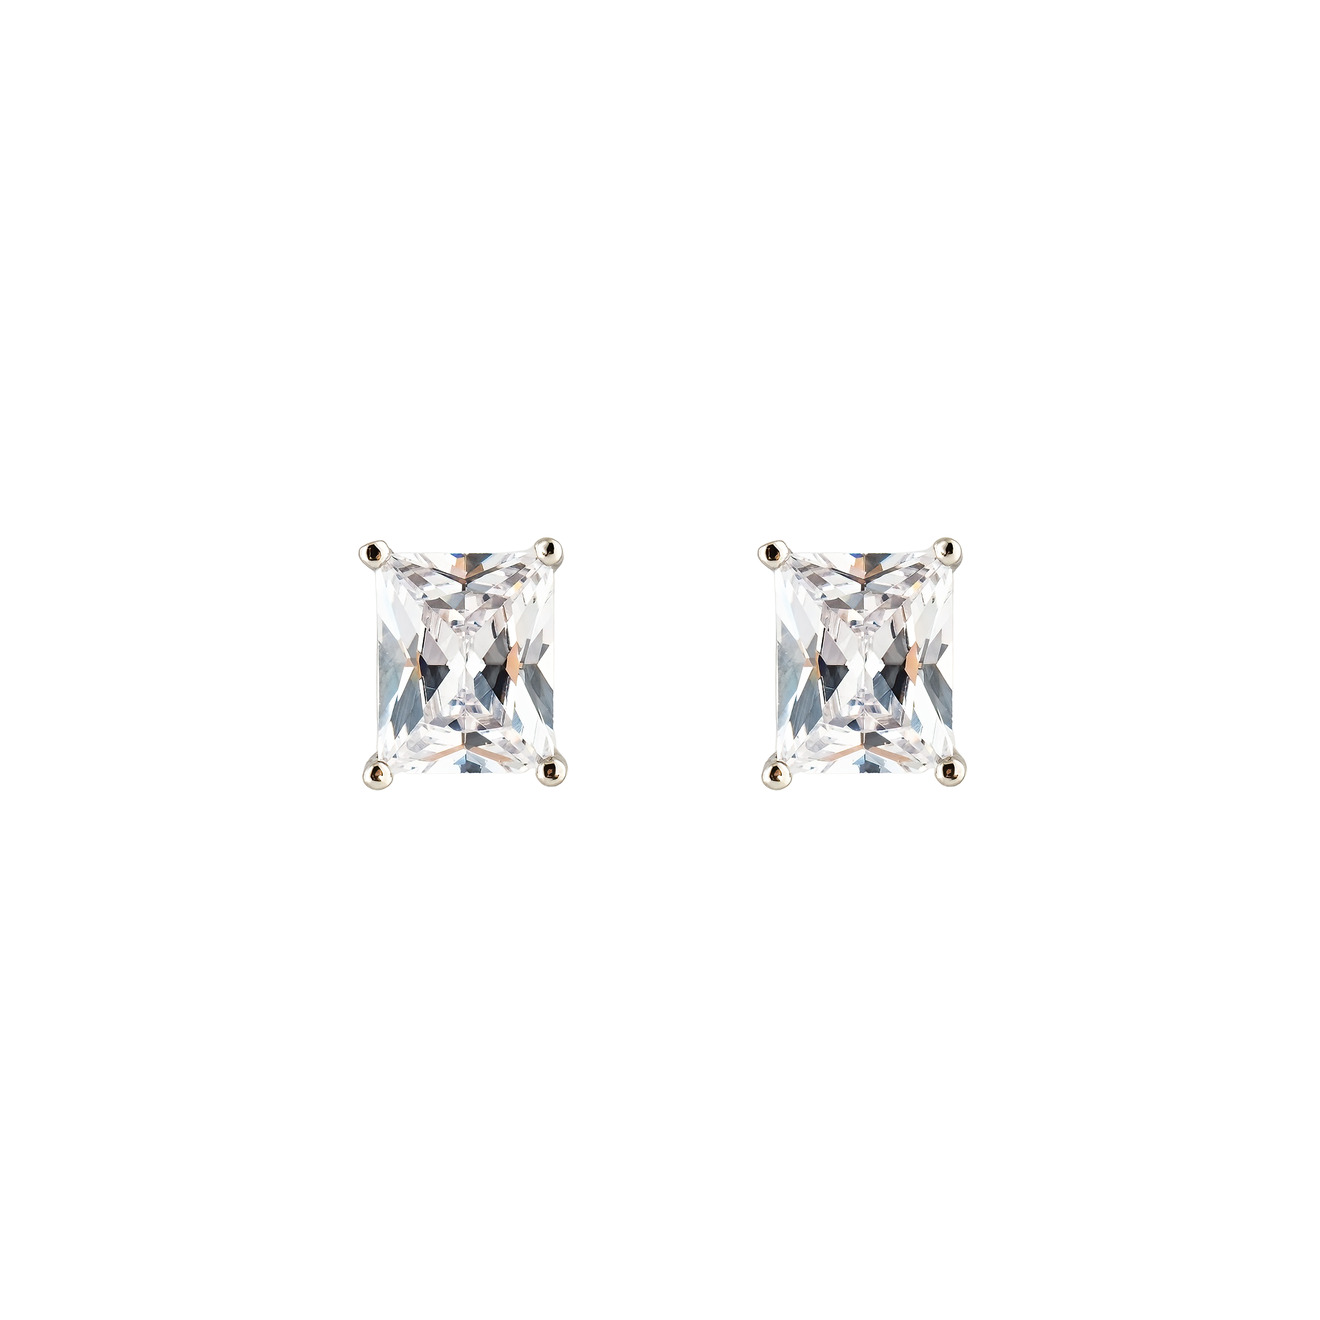 Herald Percy Серебристые серьги-пусеты с белым кристаллом herald percy золотистое фигурное кольцо с белым сердцем